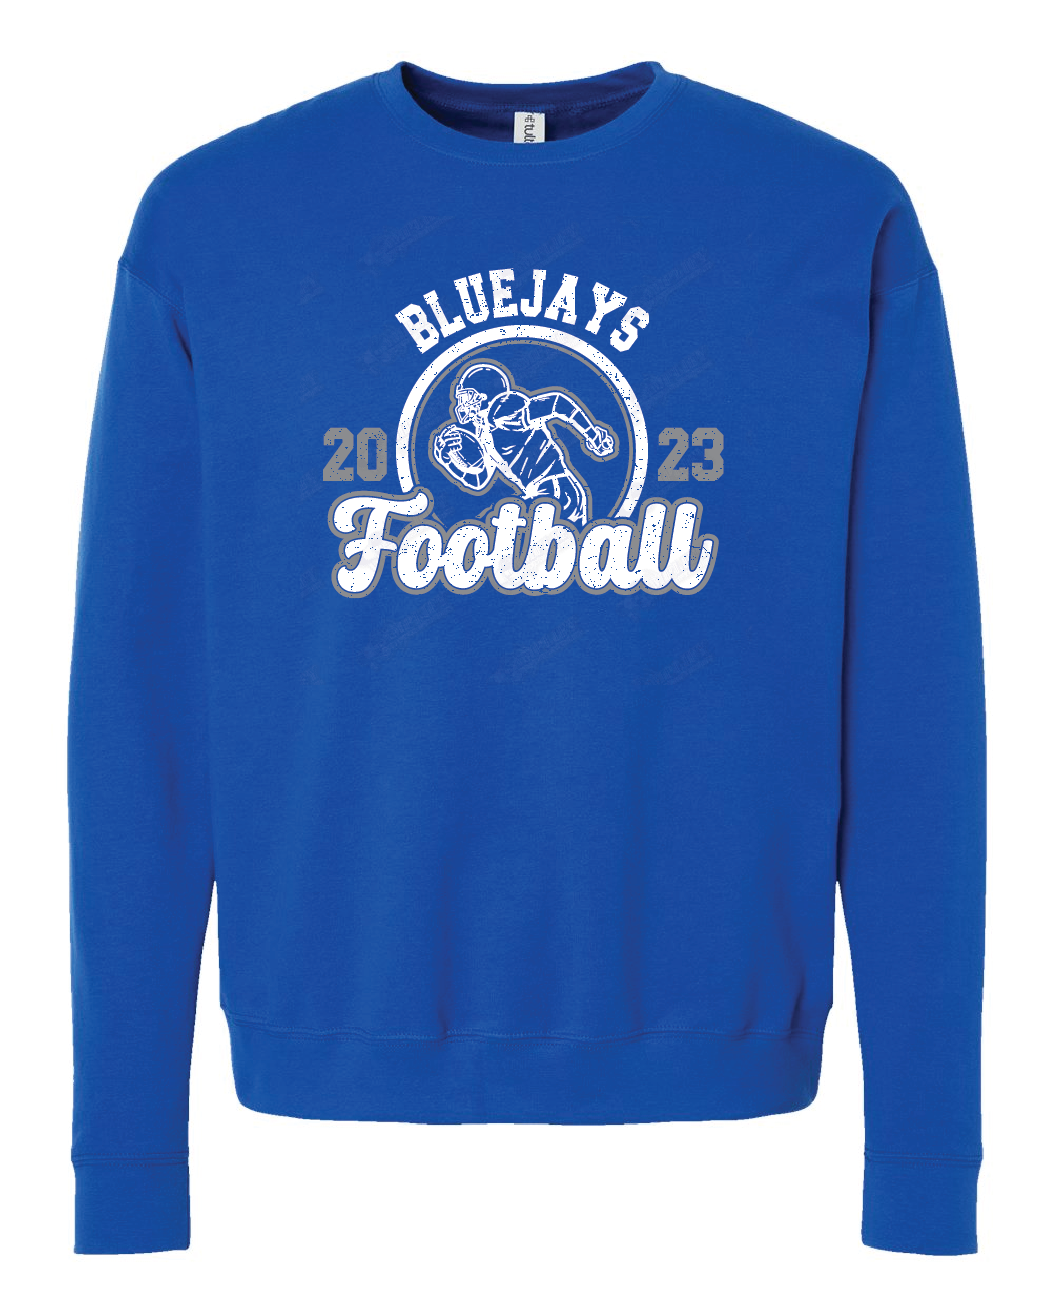 Sweatshirt Bluejays Football Distressed design